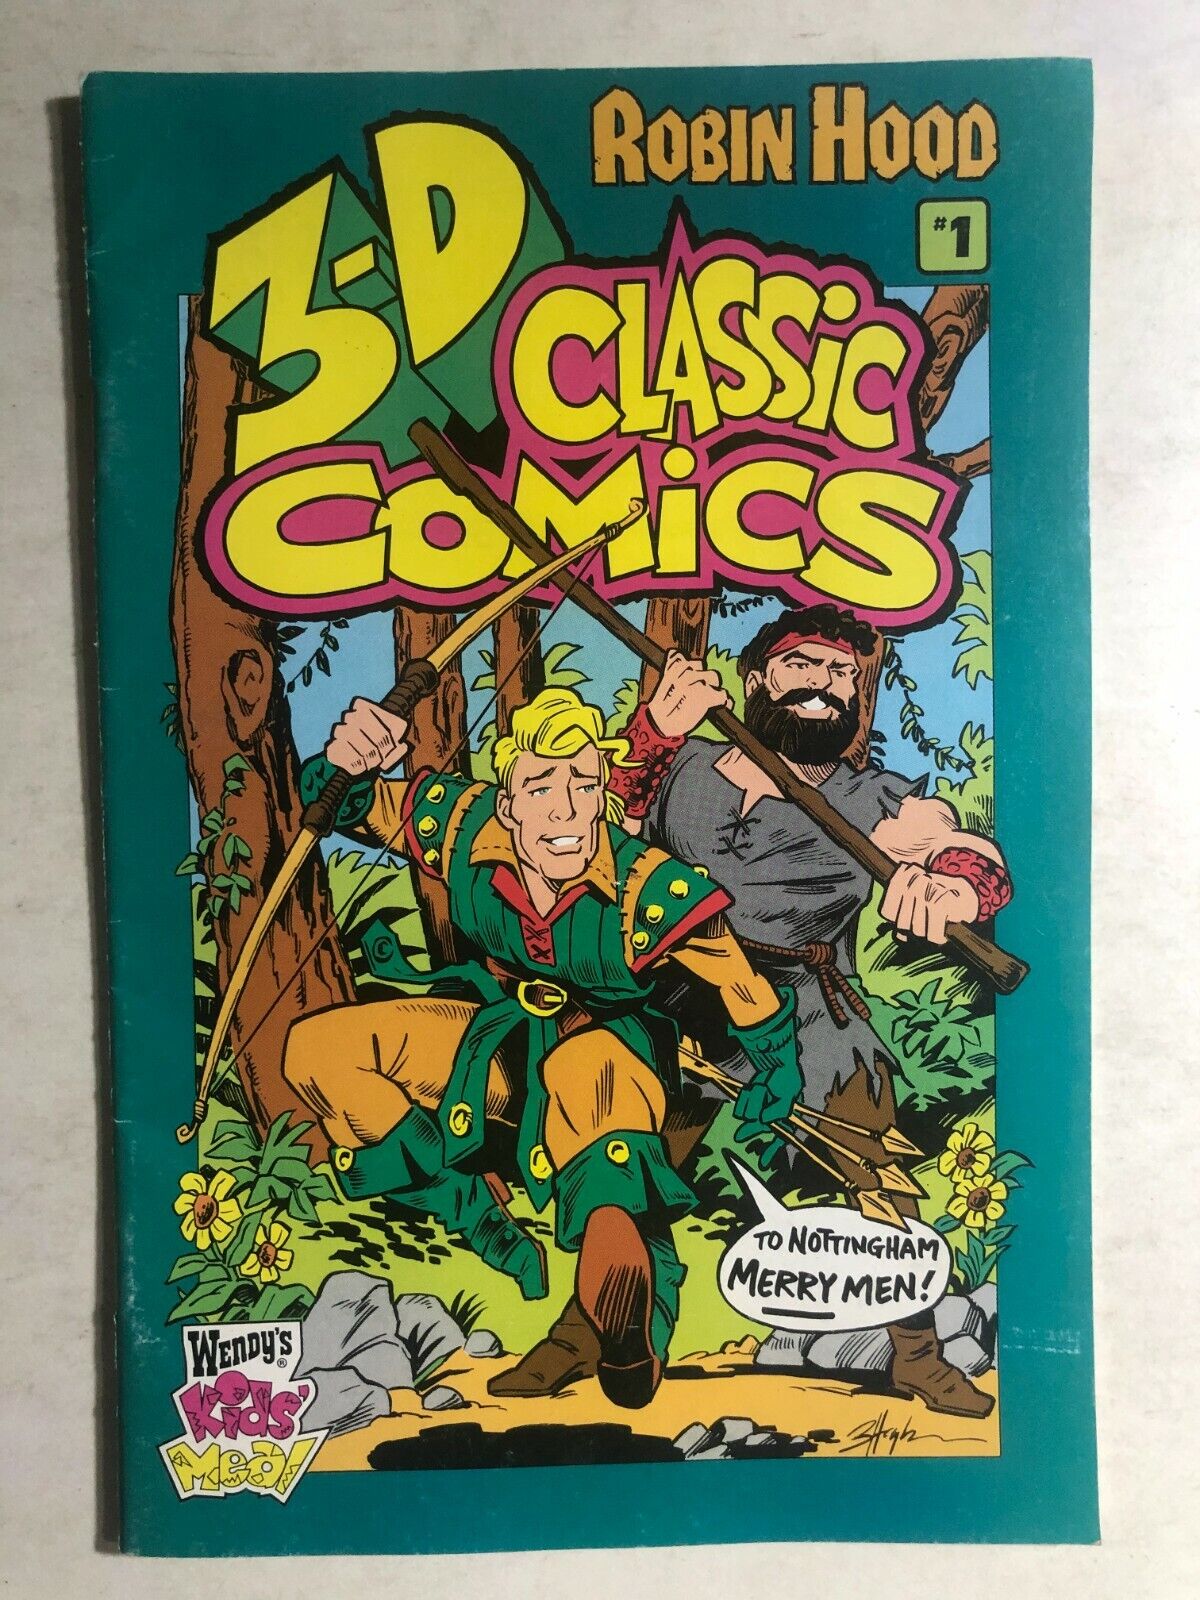 3-D CLASSIC COMICS #1 Robin Hood 1994 Wendy\'s promotional comic (no glasses) VG+